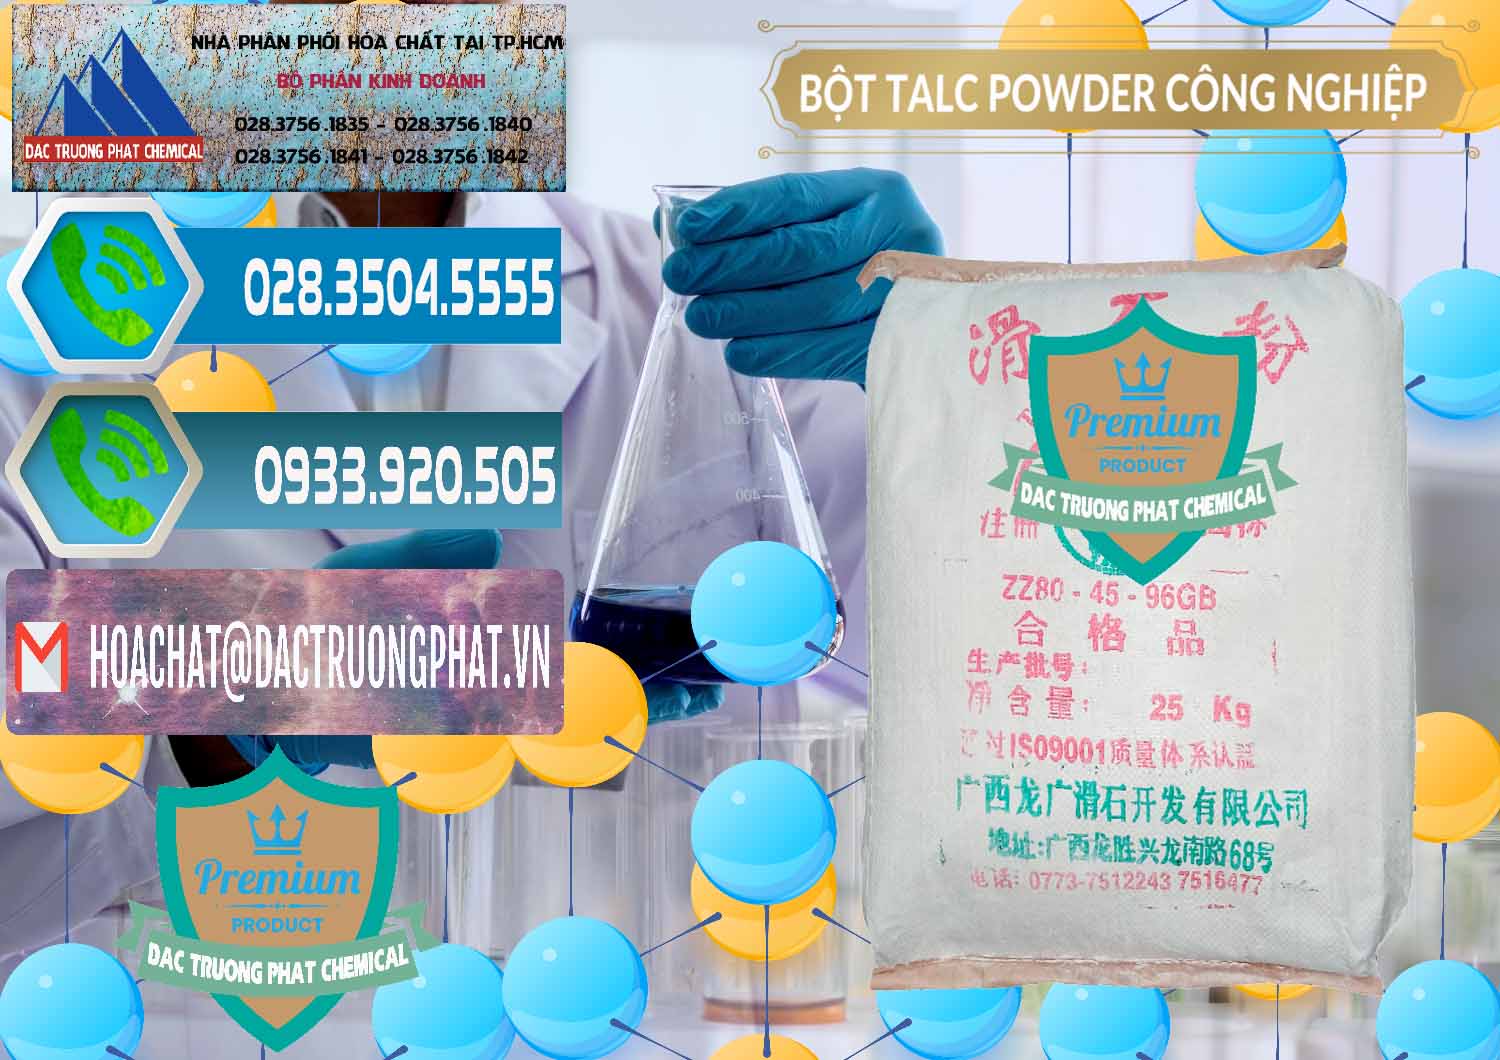 Cty chuyên bán _ phân phối Bột Talc Powder Công Nghiệp Trung Quốc China - 0037 - Công ty bán - cung cấp hóa chất tại TP.HCM - congtyhoachat.net